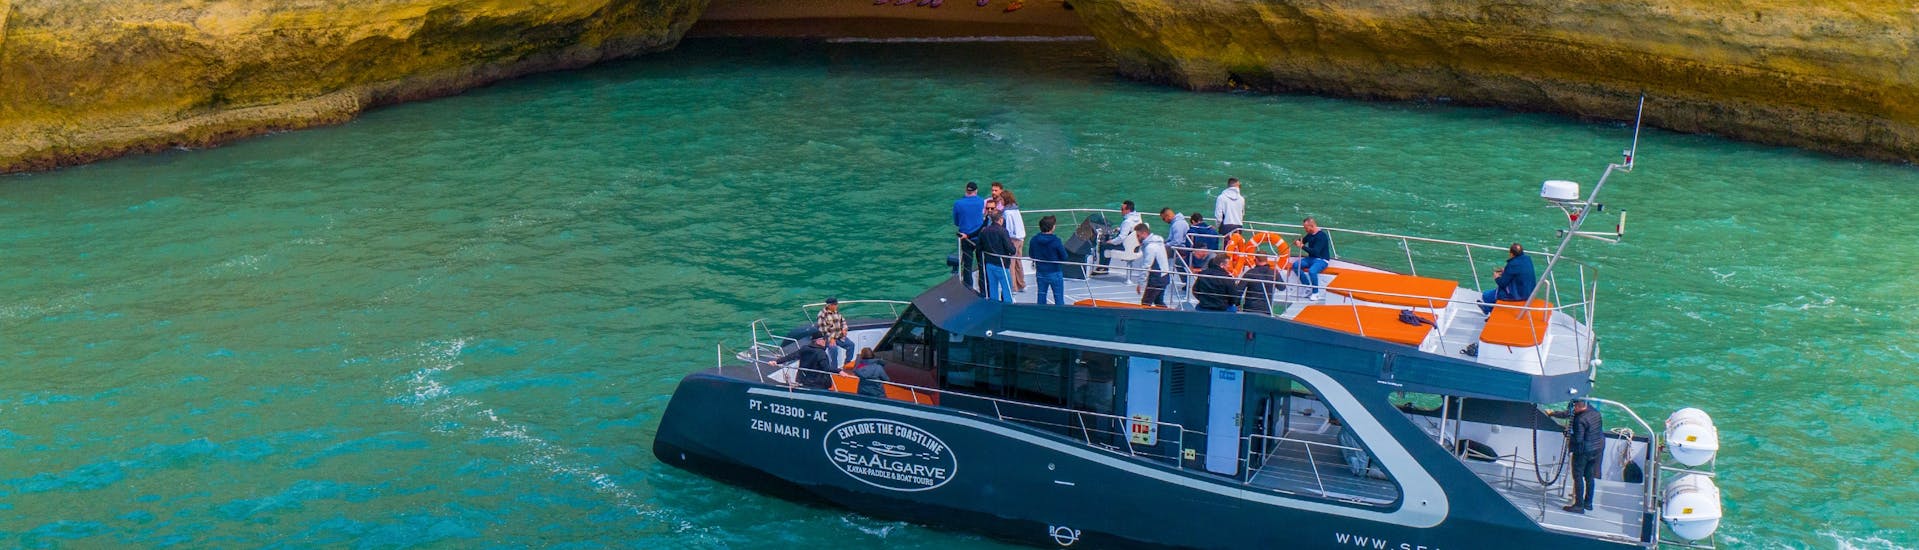 Der Catamaran von SeaAlgarve Albufeira fährt bei der Benagil Bootstour auf die berühmte Höhle von Benagil zu.